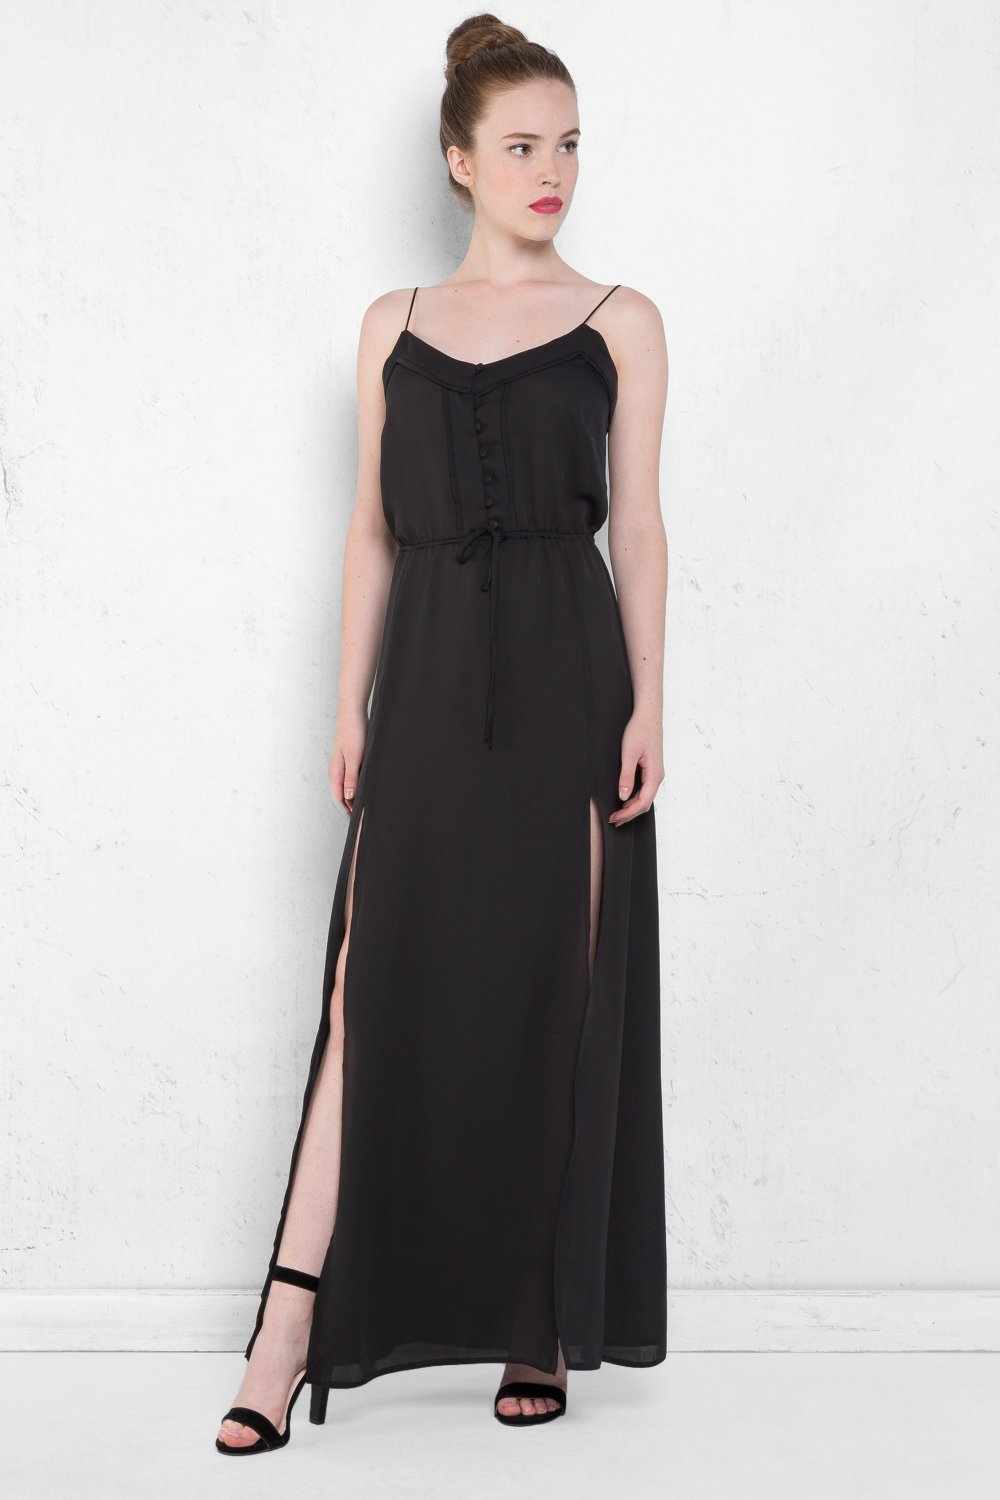 timsah zeminler dolgu  Setmoda Siyah Çift Yırtmaçlı İp Askılı Uzun Elbise | ElbiseBul